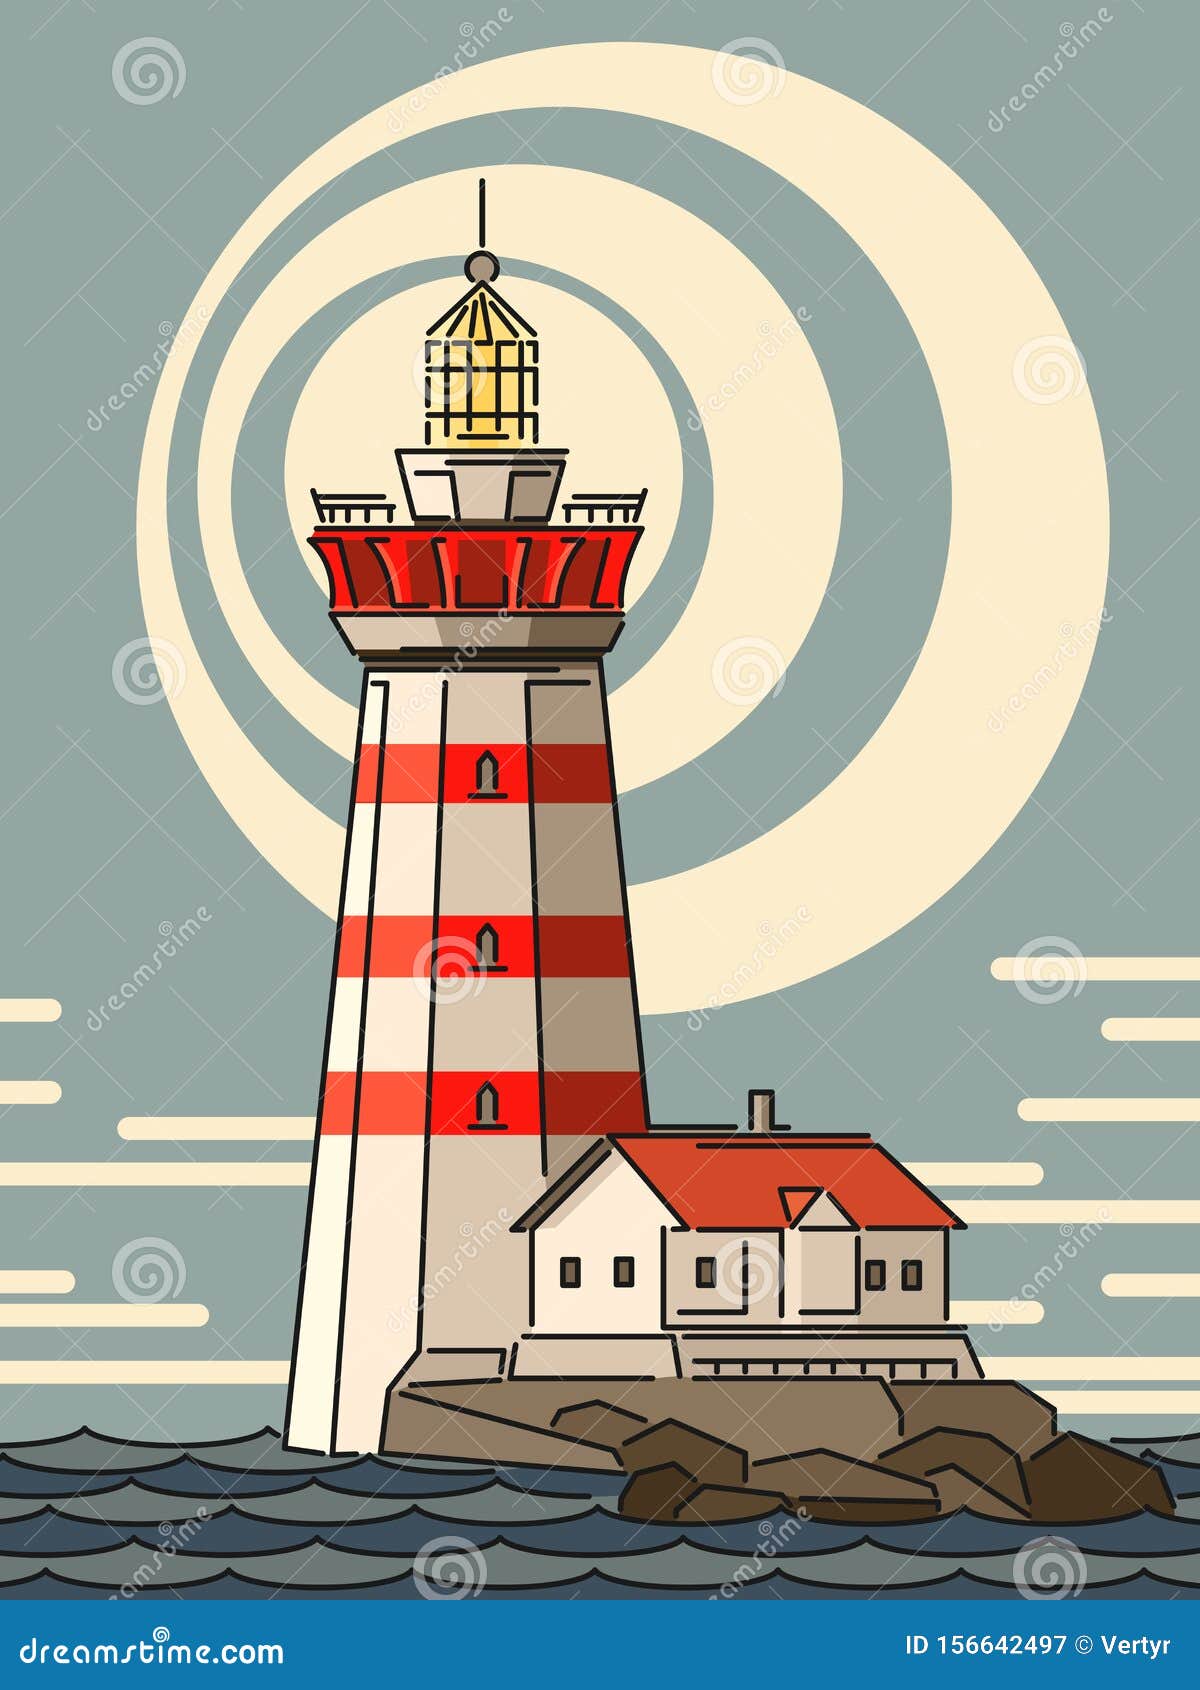 Simple Cartoon Illustrations of Lighthouse on Island. Stock Vector -  Illustration of lights, illuminator: 156642497